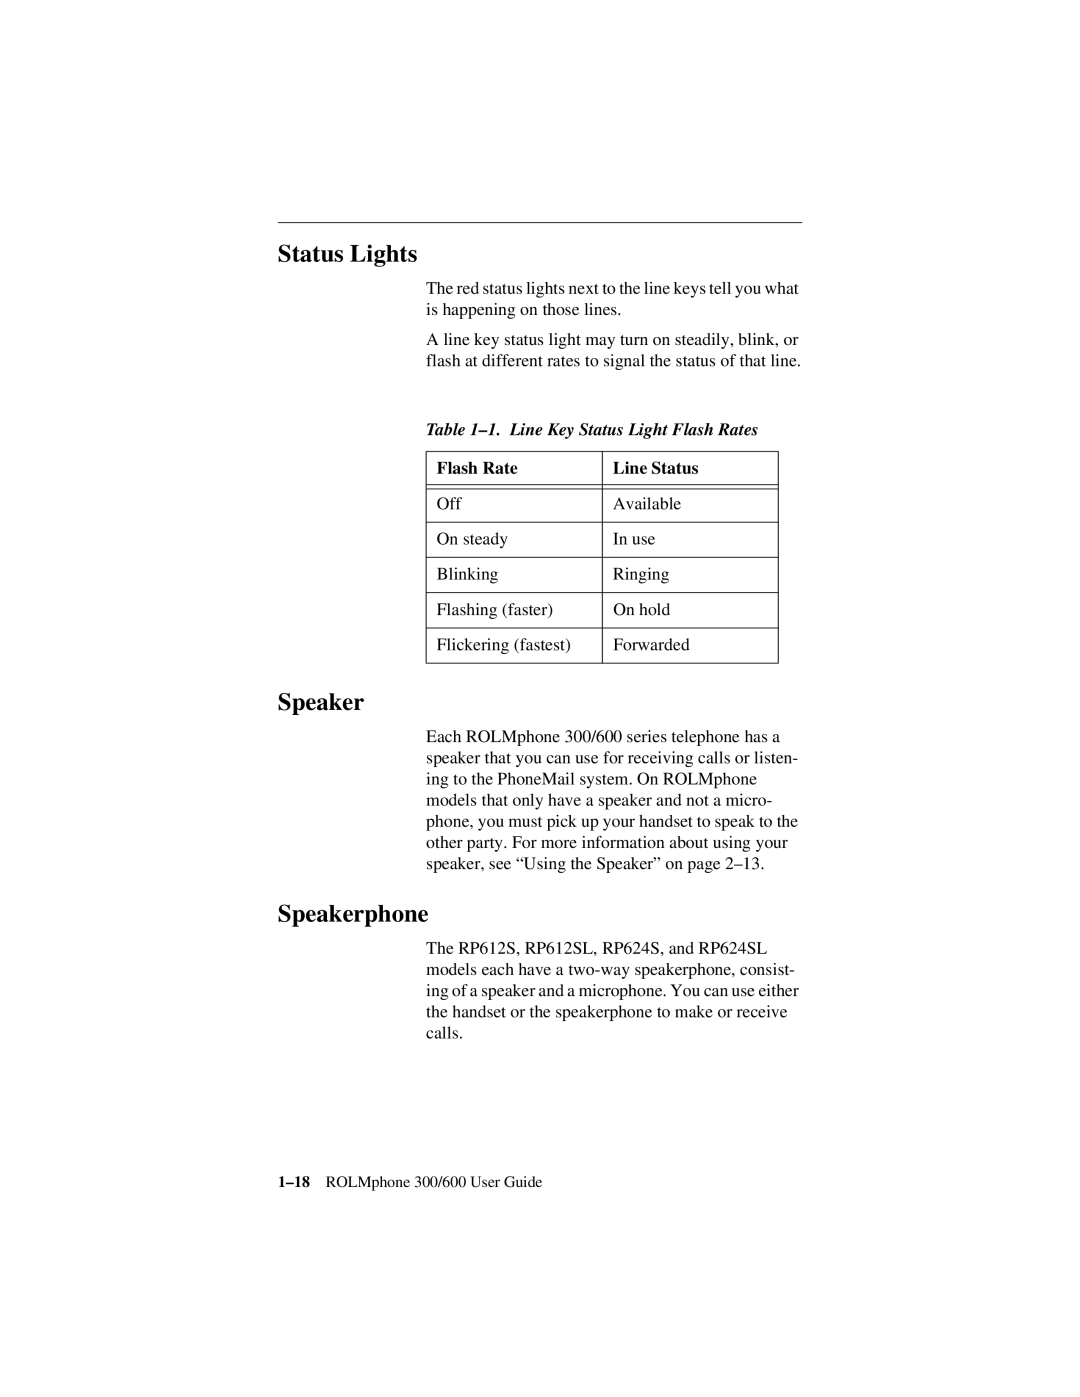 Siemens 300 Series, 600 Series manual Status Lights, Speakerphone, 1. Line Key Status Light Flash Rates, Line Status 